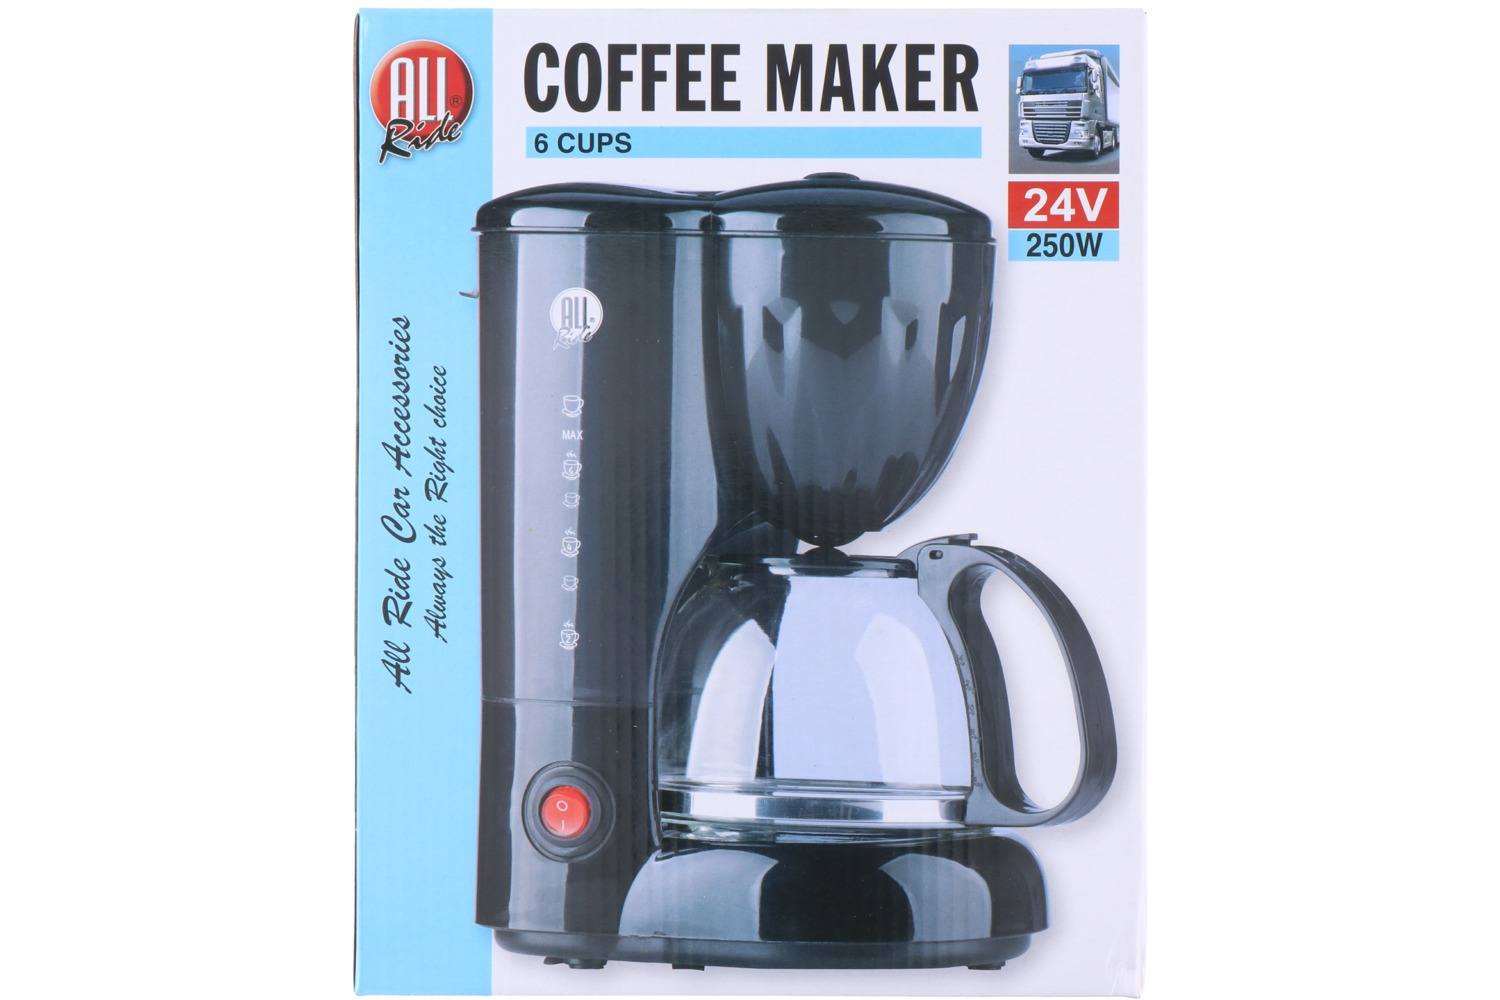 Coffee maker, AllRide, 24V, 250W 2